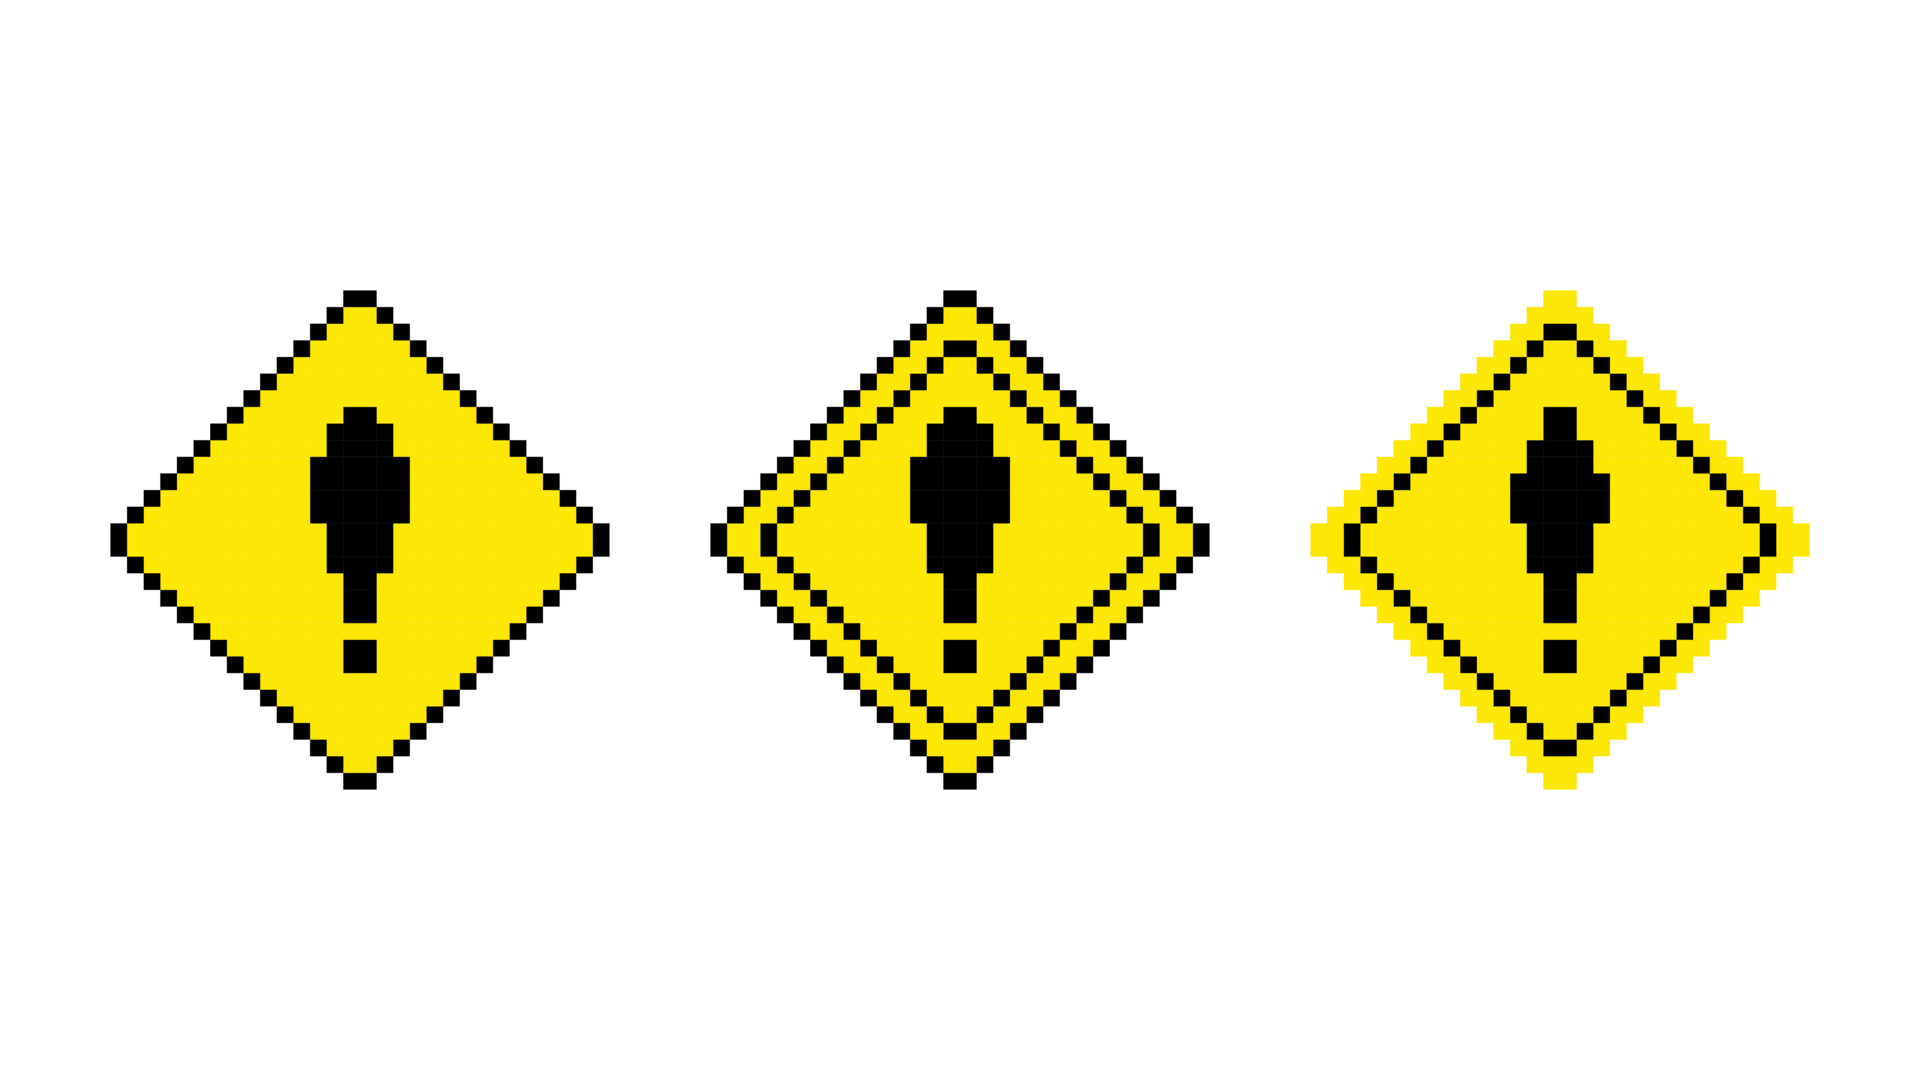 Sinal de estrada realista símbolo de aviso em forma de diamante